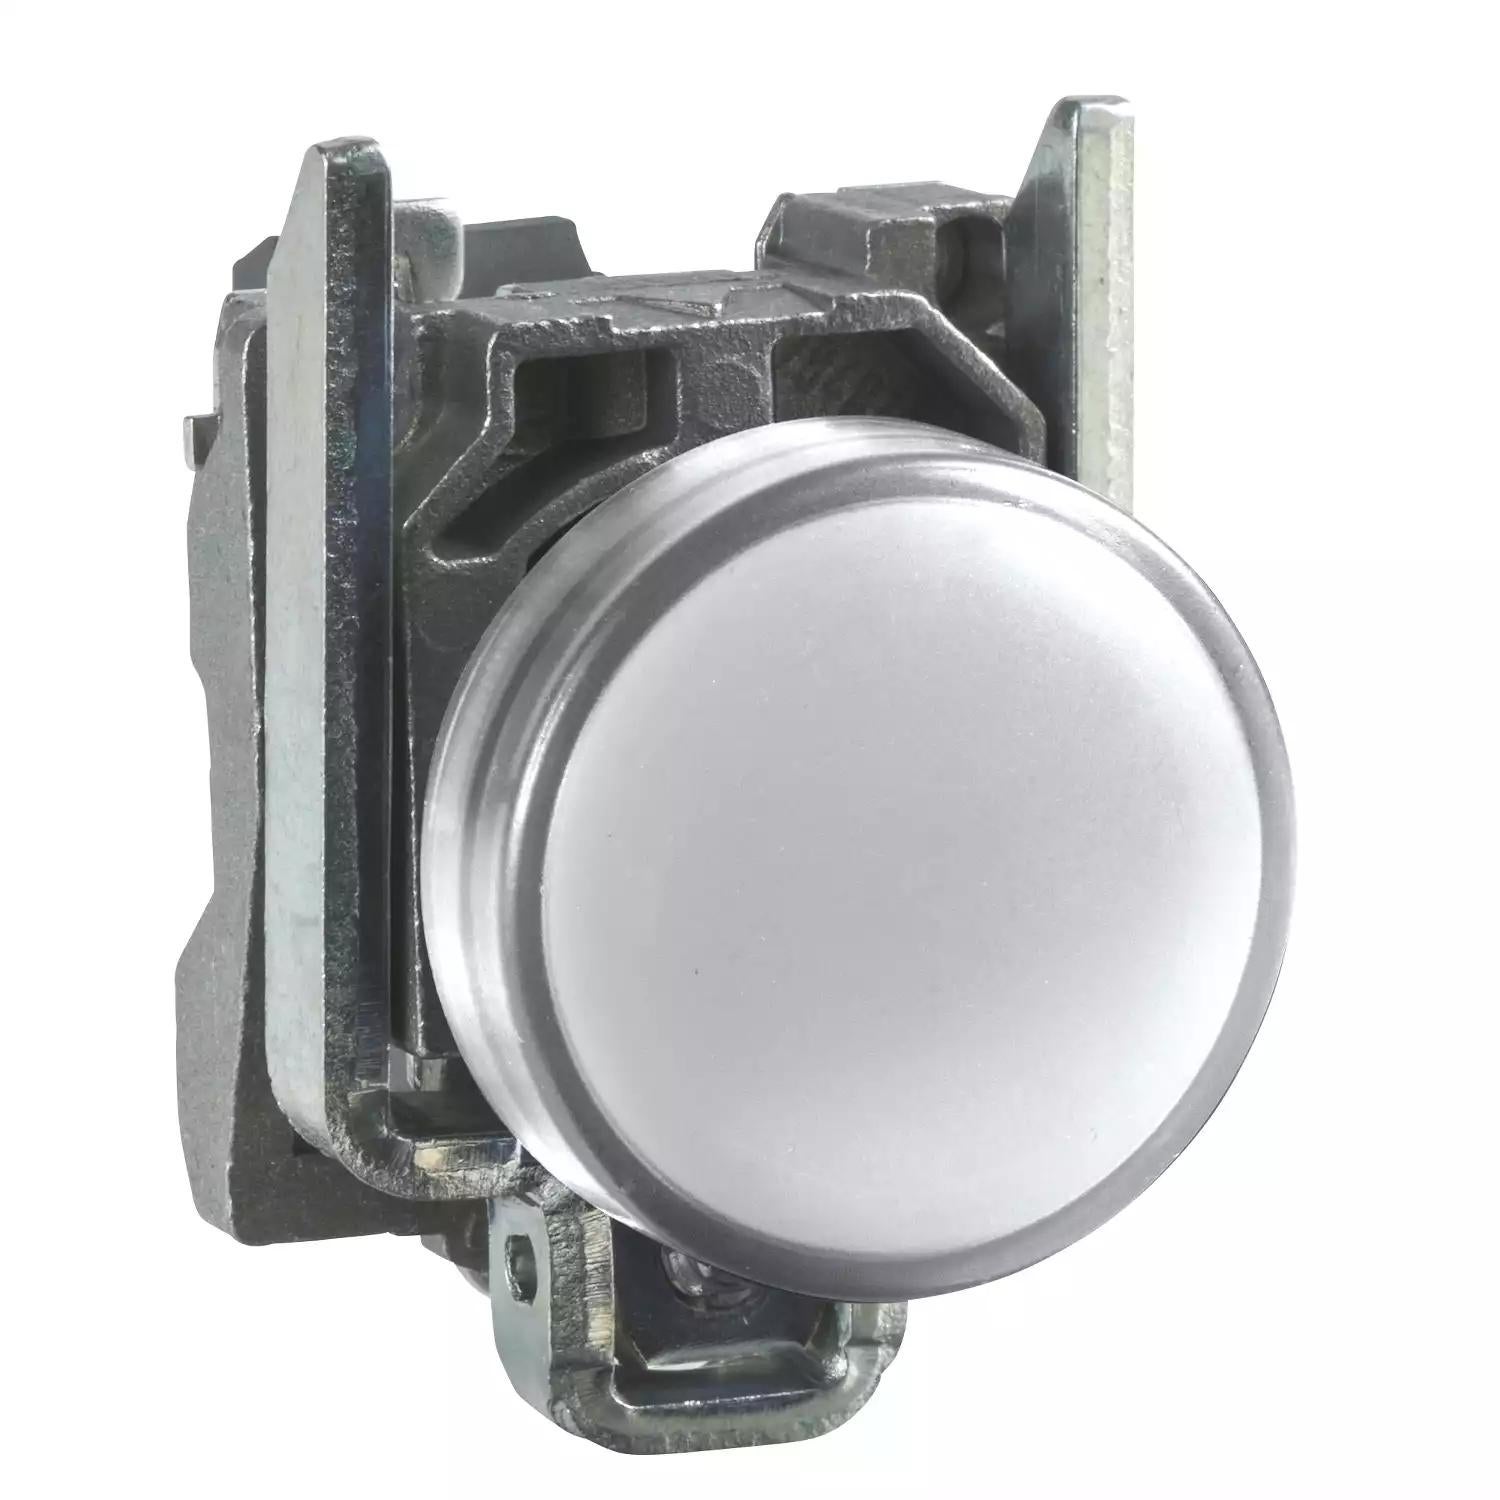 Harmony XB4, Pilot light, metal, white, Ø22, plain lens with integral LED, 230...240 VAC